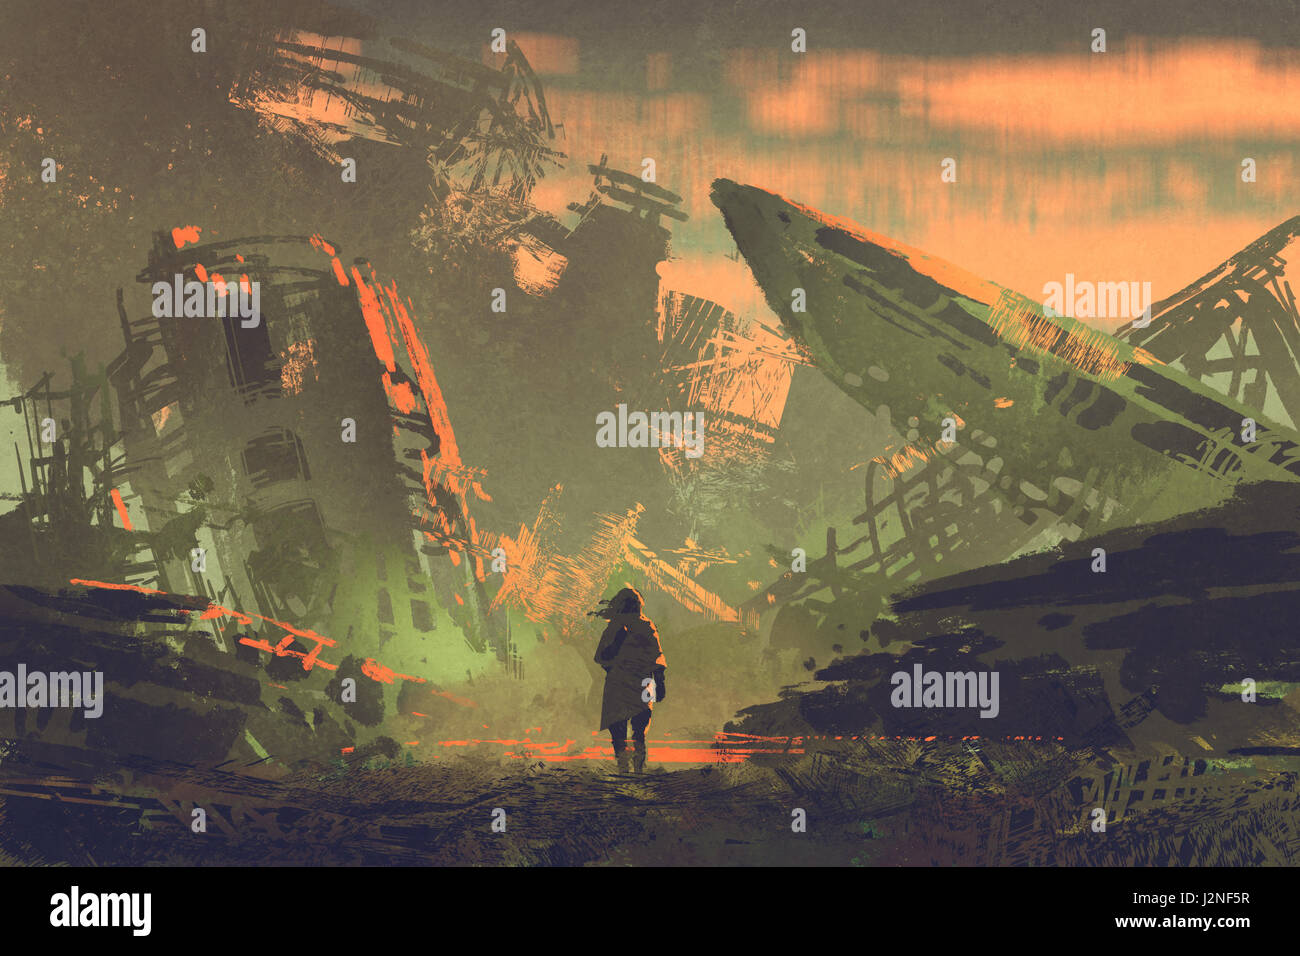 Szene des Mannes zu Fuß aus zerstörten Flugzeugen bei Sonnenuntergang mit digitaler Kunststil, Illustration, Malerei Stockfoto